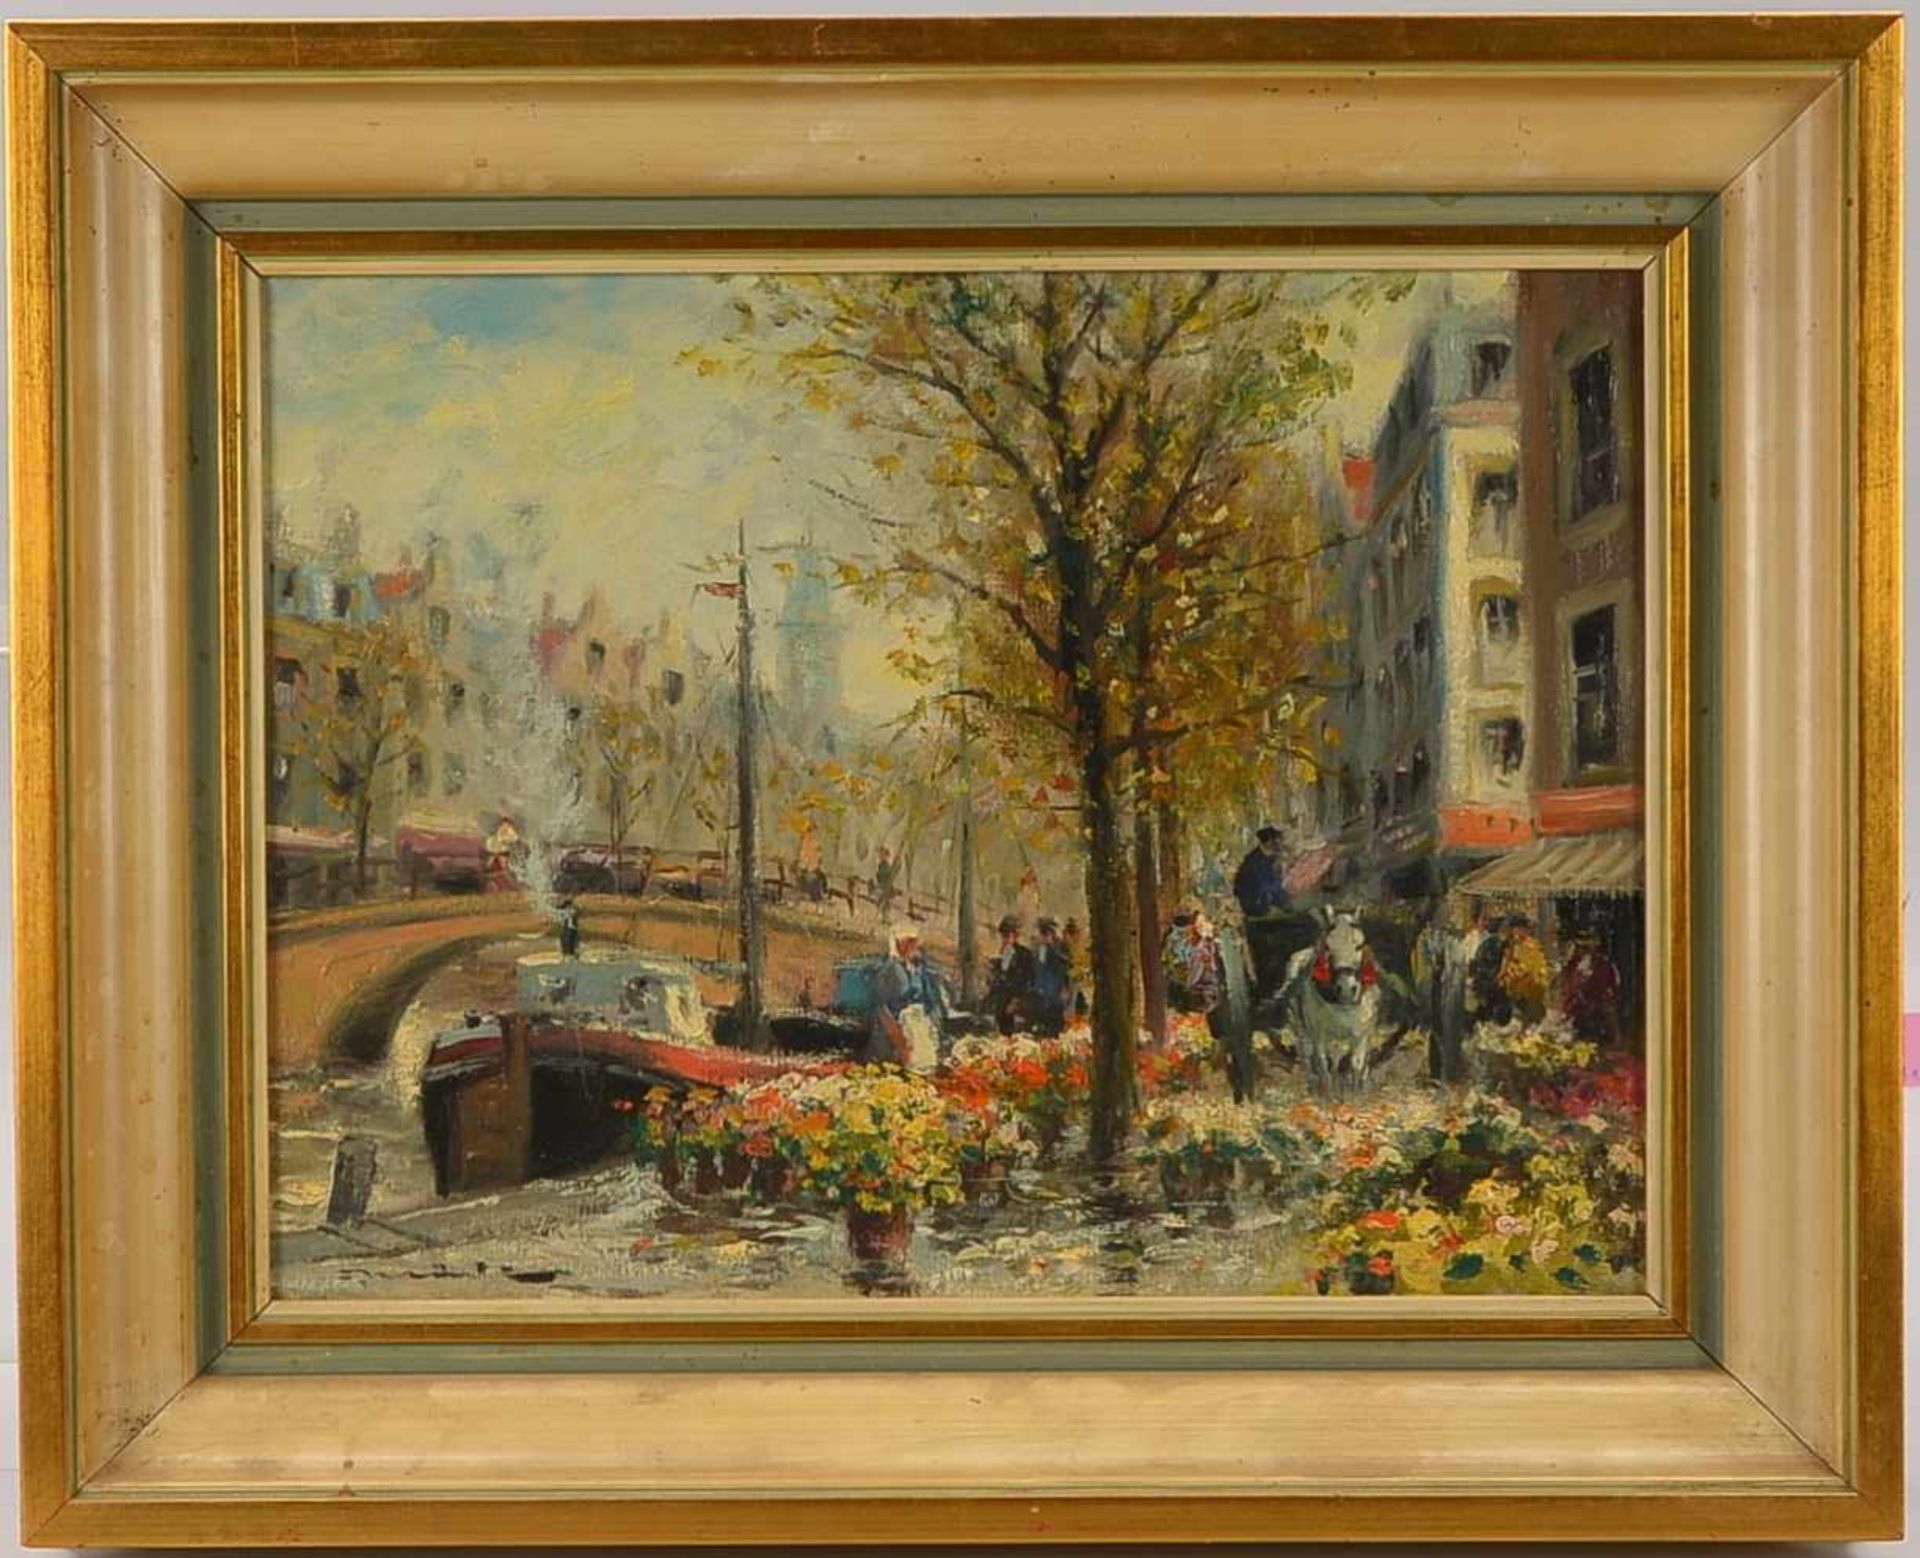 Gemälde, 'Blumenmarkt an der Gracht', Öl/Lw, unten links unleserlich signiert; Bildmaße 30 x 40